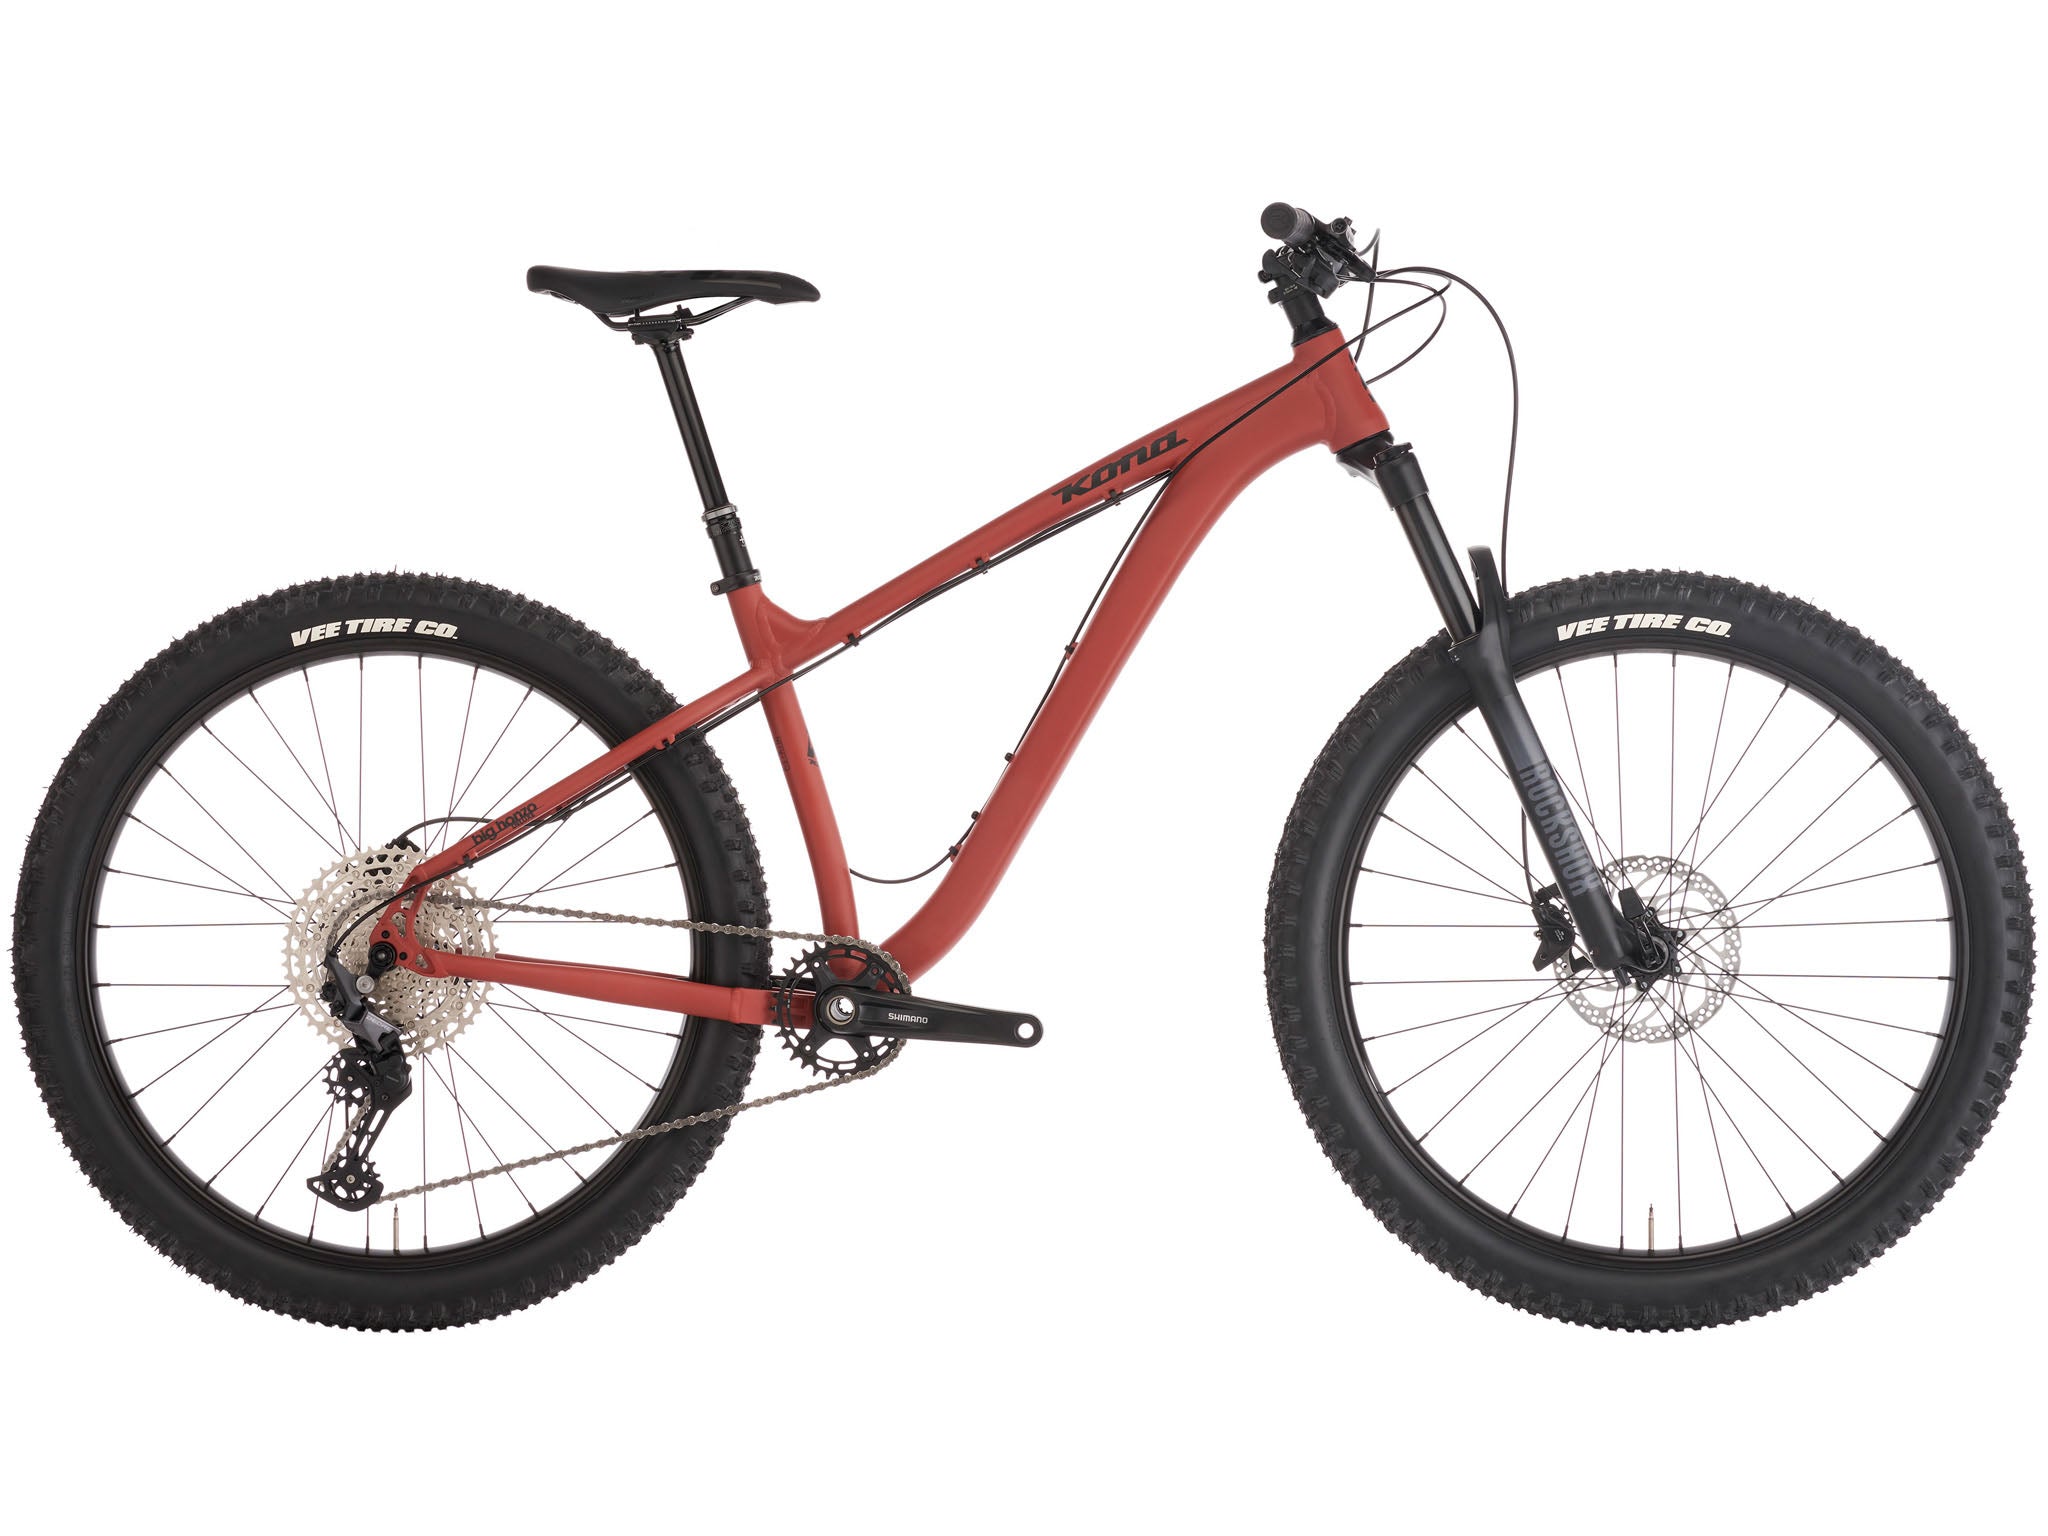 Kona Mountain Bikes | All Mountain, XC, Enduro, and Trail | Kona